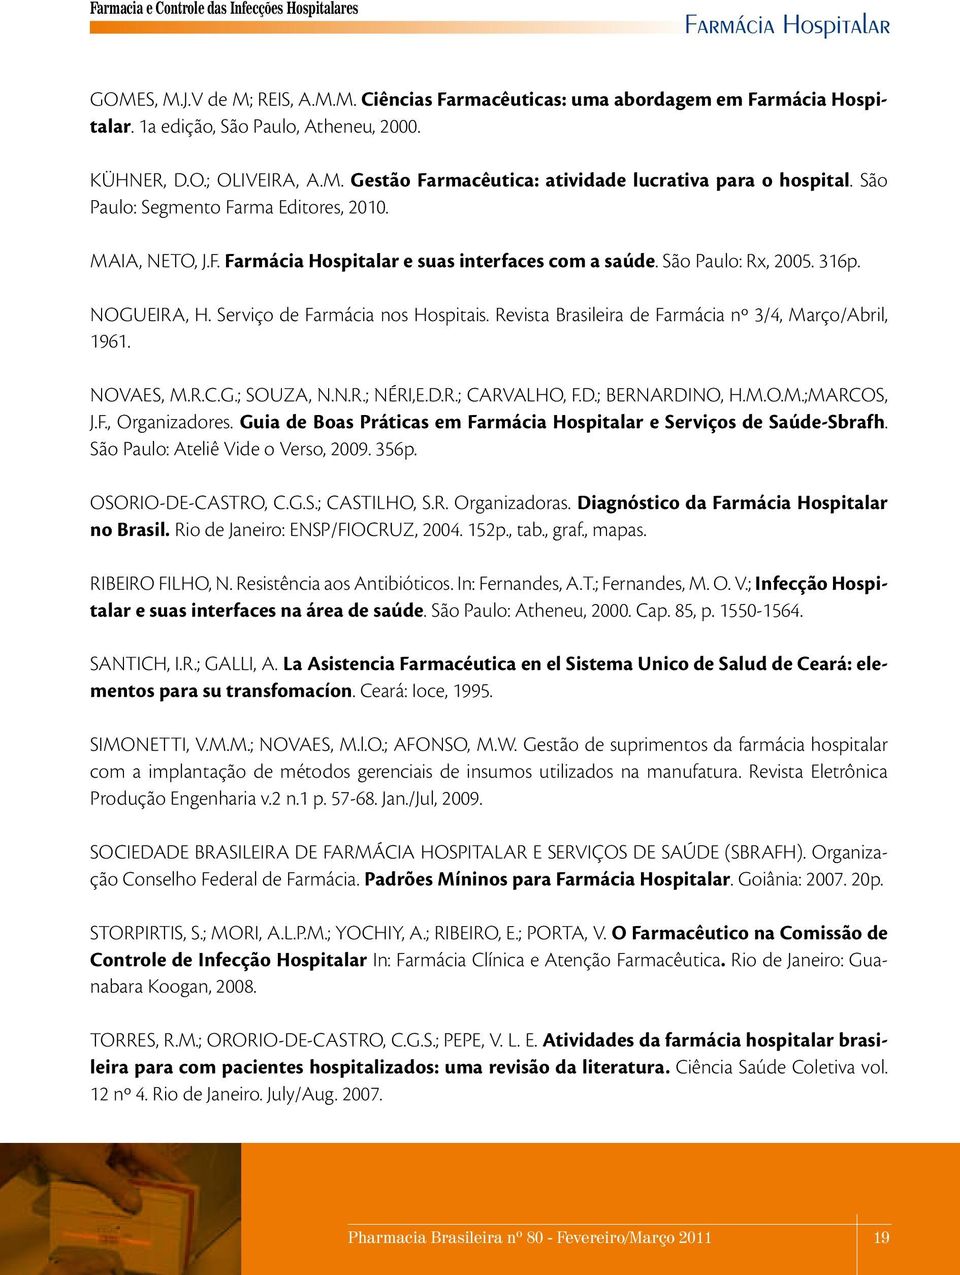 Revista Brasileira de Farmácia nº 3/4, Março/Abril, 1961. NOVAES, M.R.C.G.; SOUZA, N.N.R.; NÉRI,E.D.R.; CARVALHO, F.D.; BERNARDINO, H.M.O.M.;MARCOS, J.F., Organizadores.